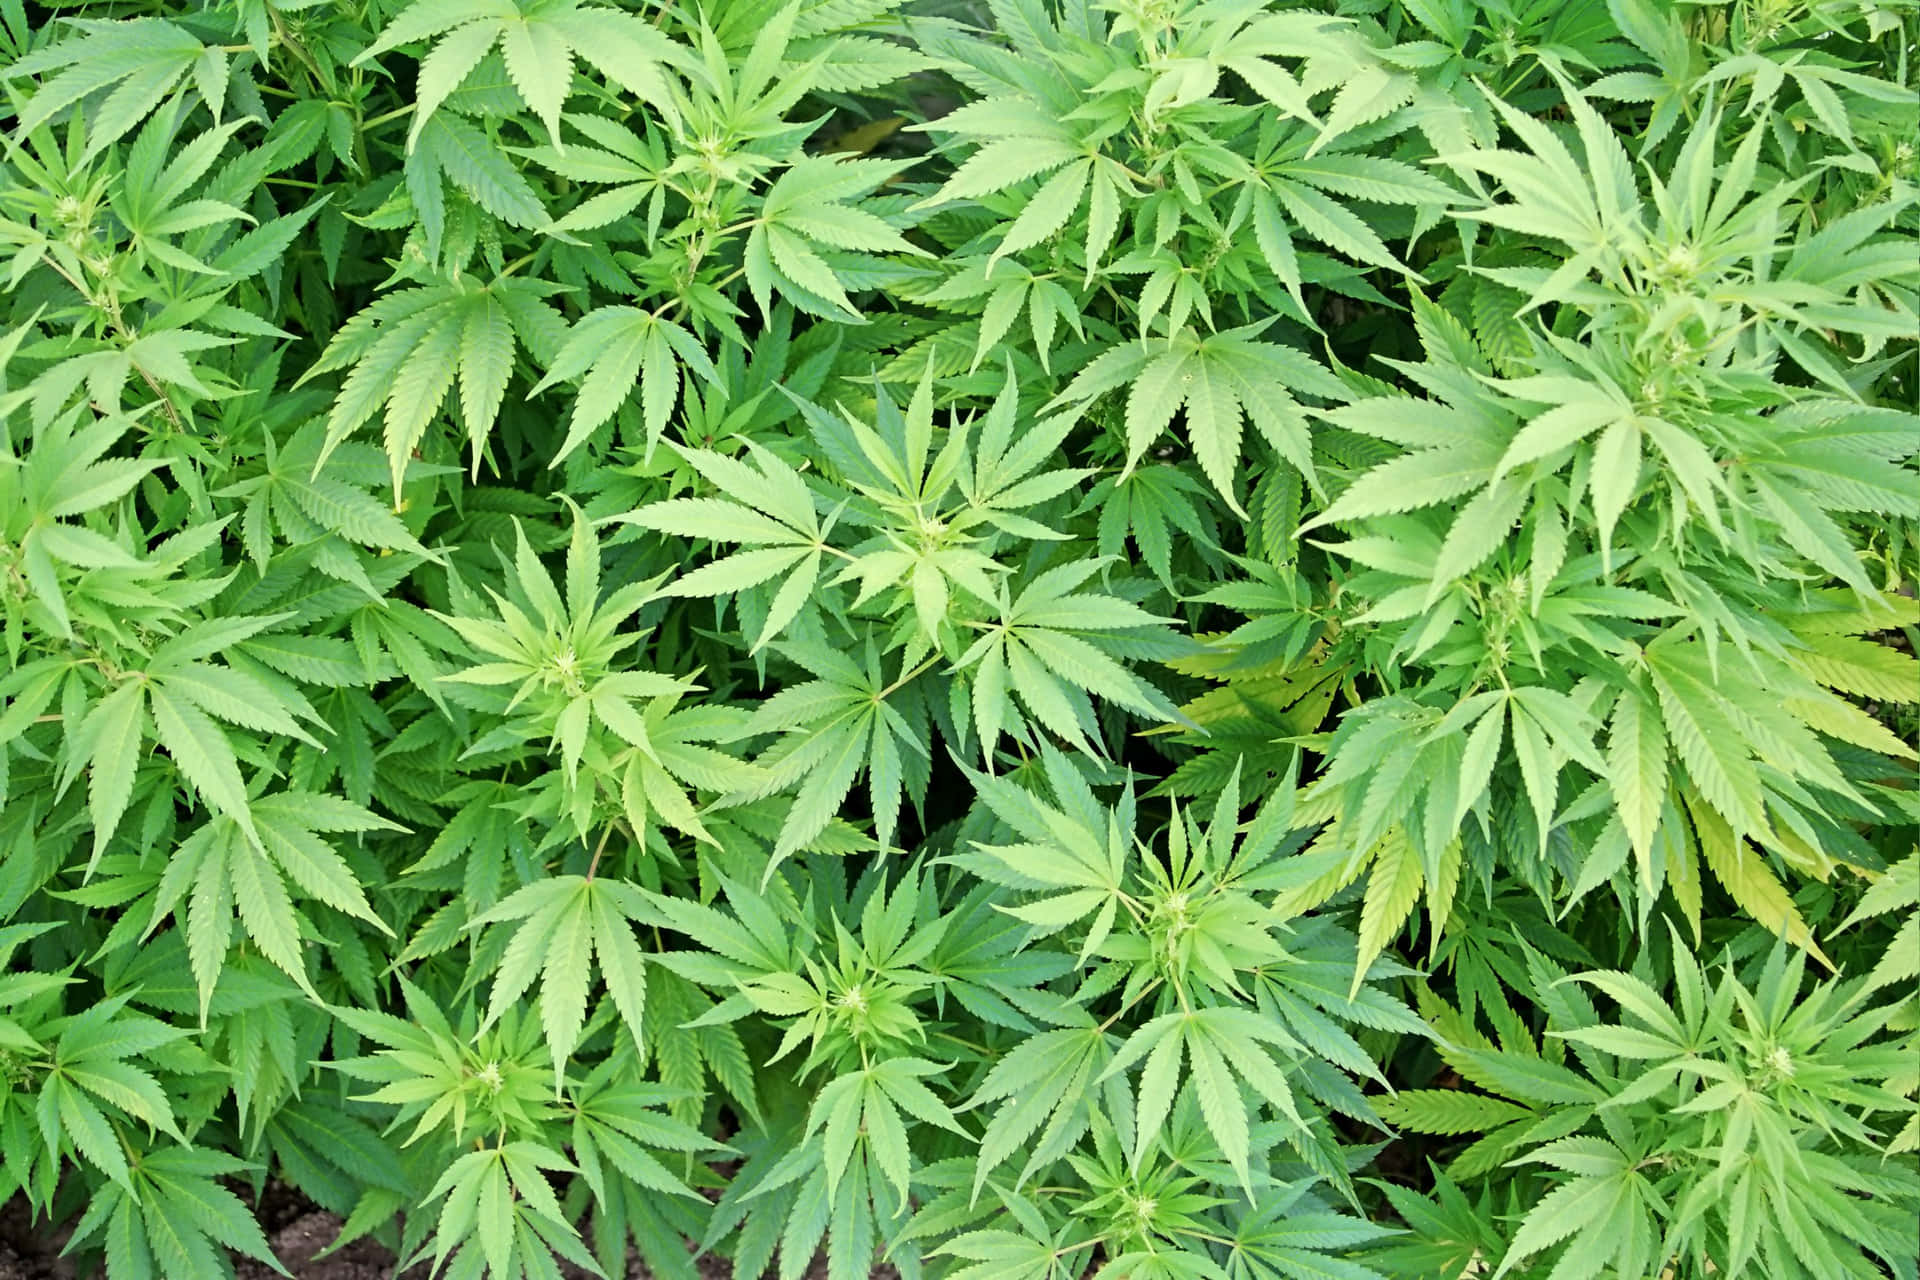 Elevatetus Sentidos Con La Naturaleza: Esta Planta De Cannabis Está Aquí Para Ayudar.